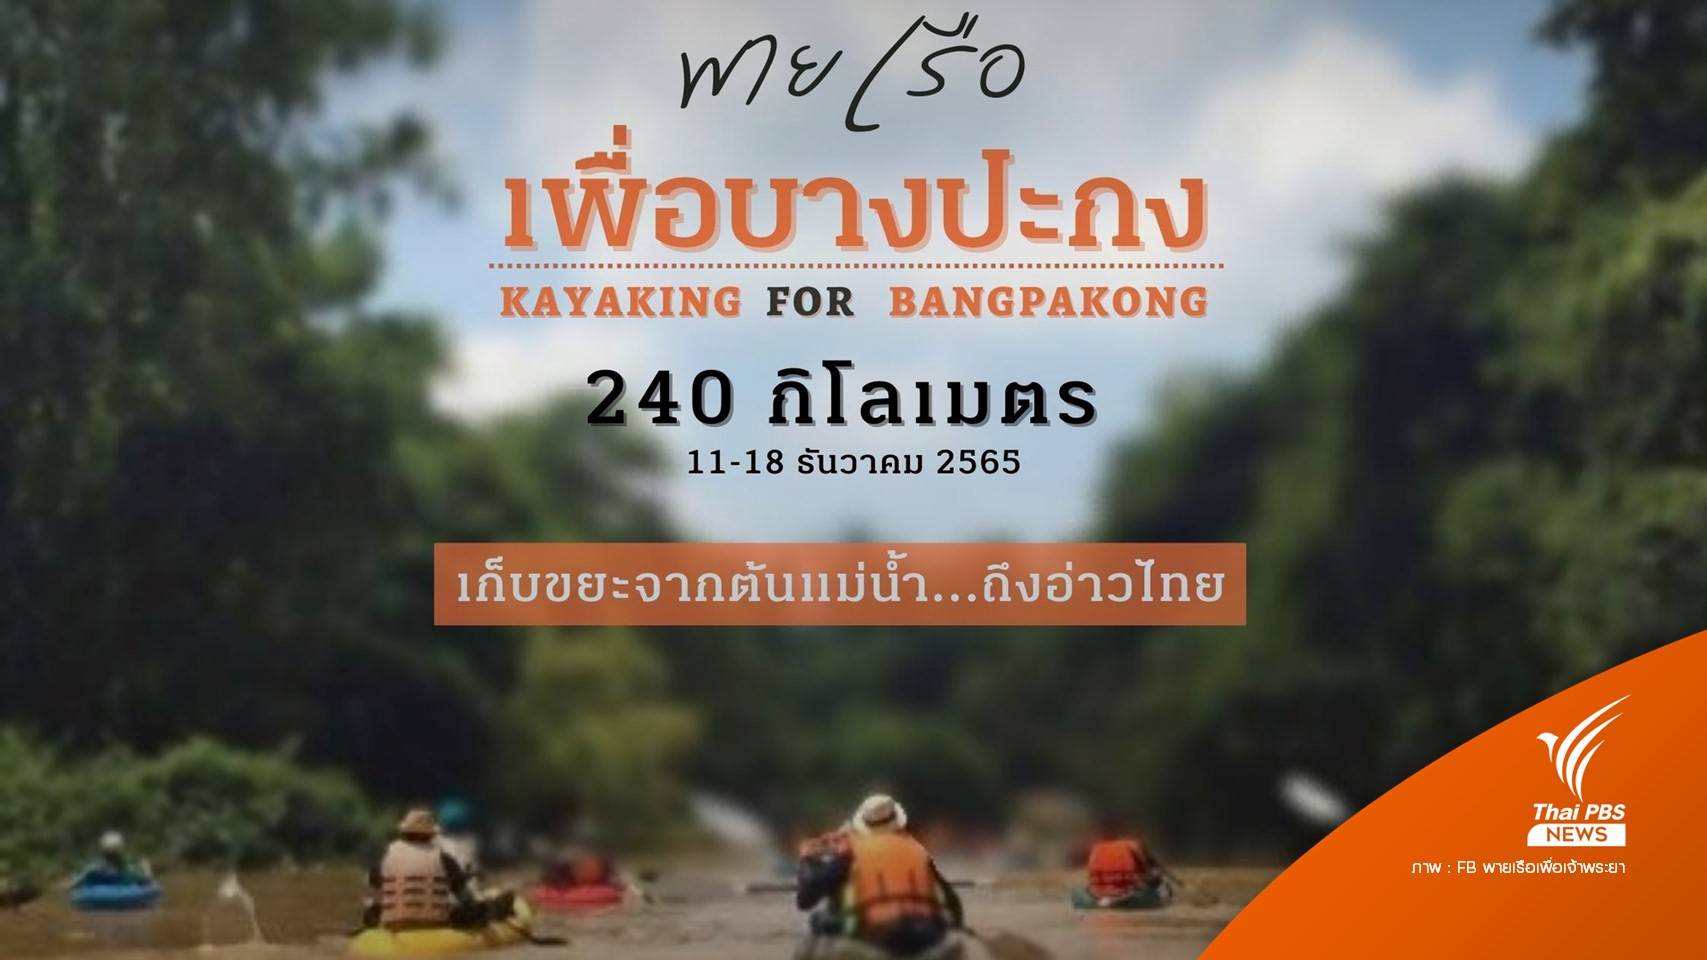 "พายเรือเพื่อบางปะกง : เก็บขยะจากต้นแม่น้ำถึงอ่าวไทย" 